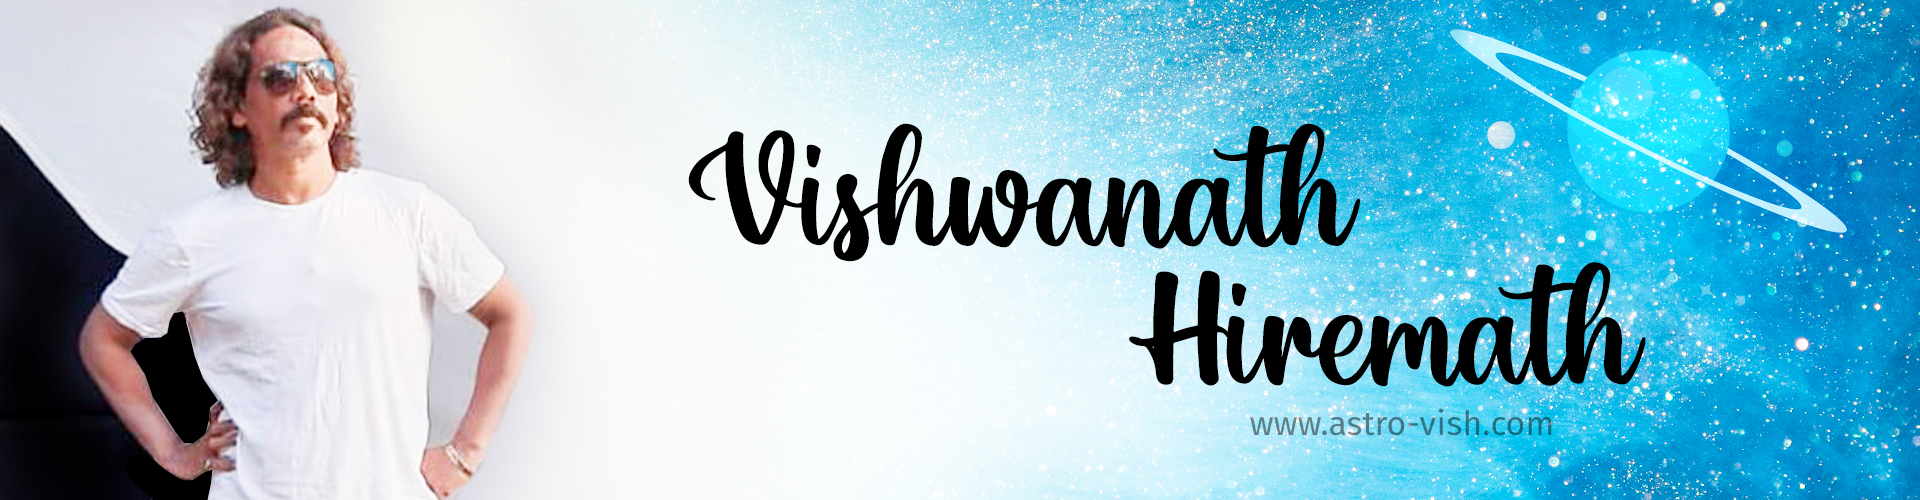 About Vishwanath Hiremath